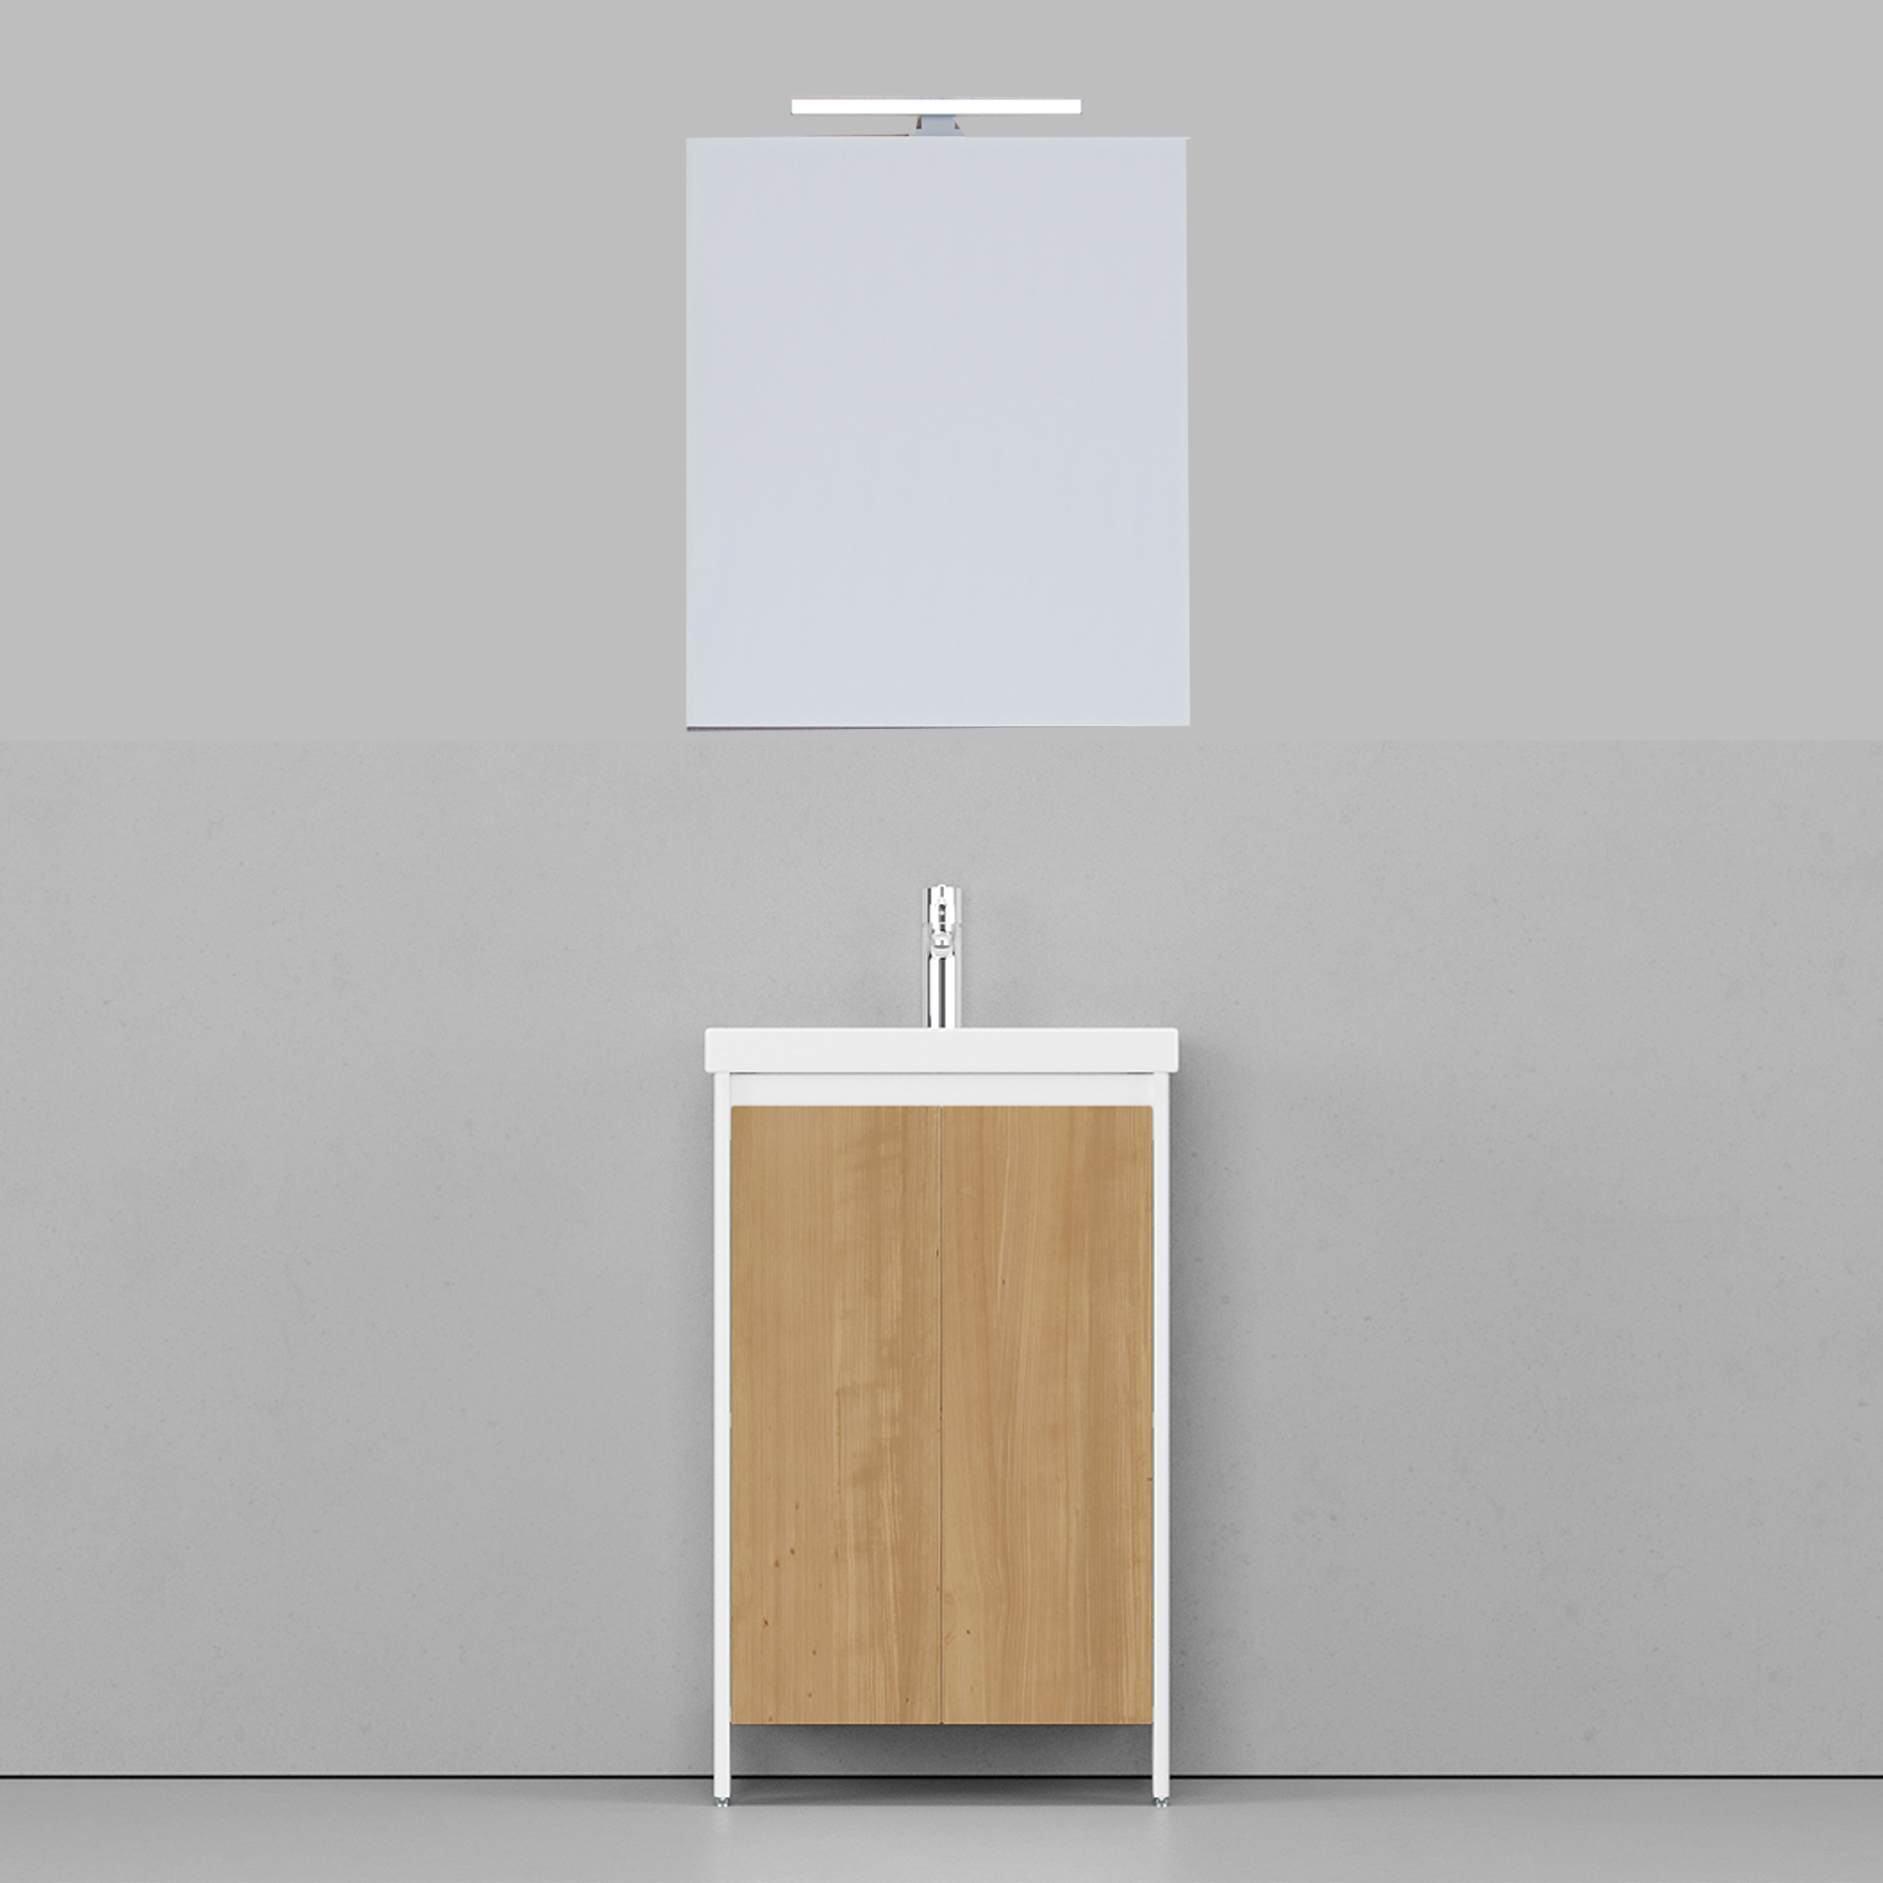 Мебель для ванной Velvex Klaufs 50.2D-617.216 белый гянец/дерево